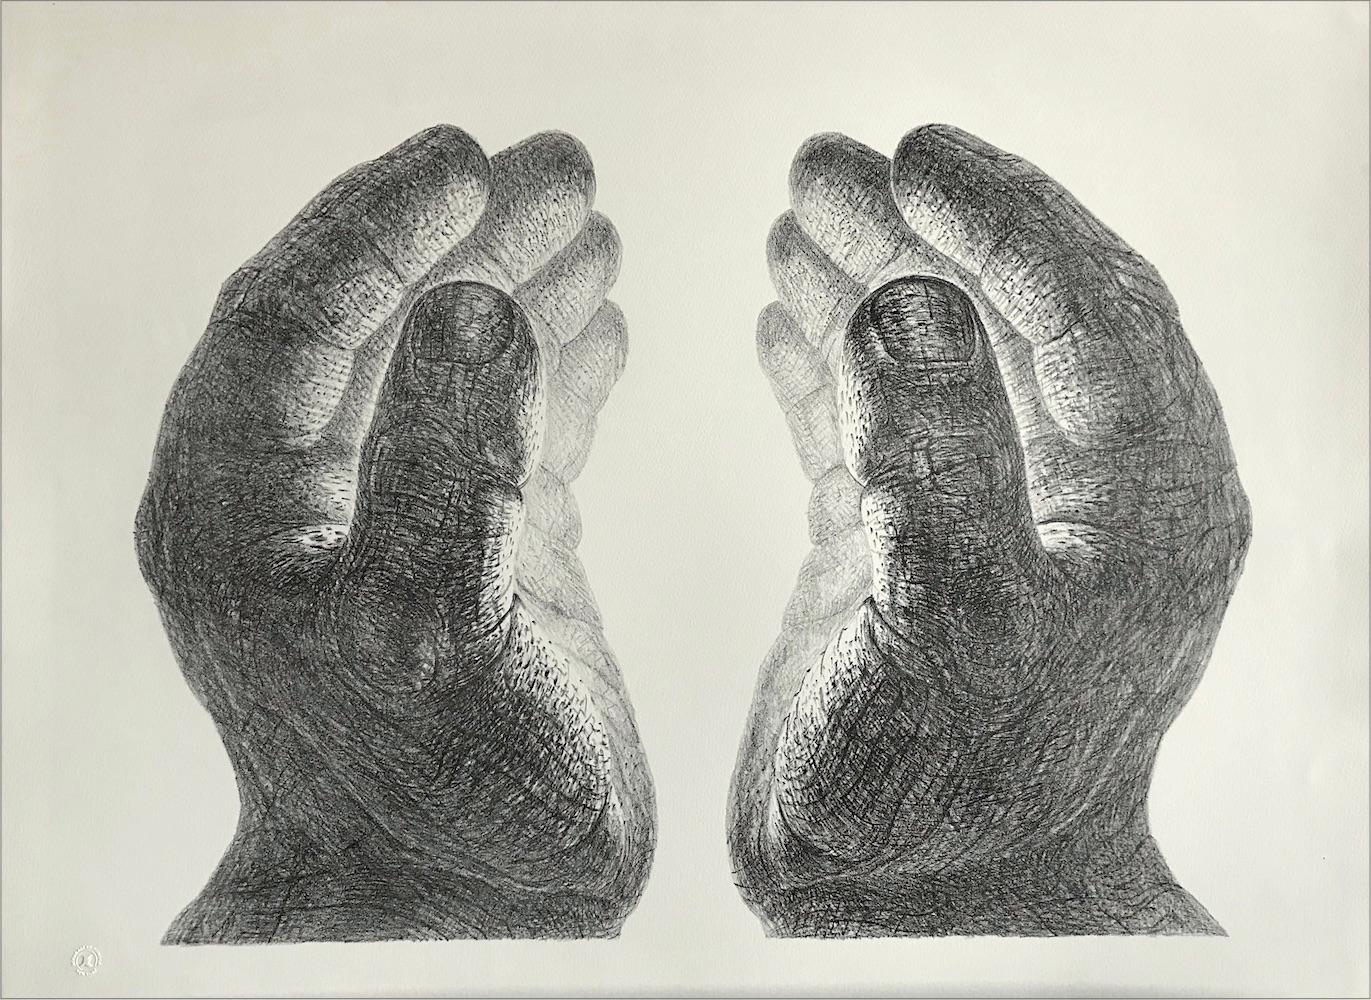 CREATION Handgezeichnete Lithographie, geschnittenes Paar Hände, Lichtglasur, Meditation